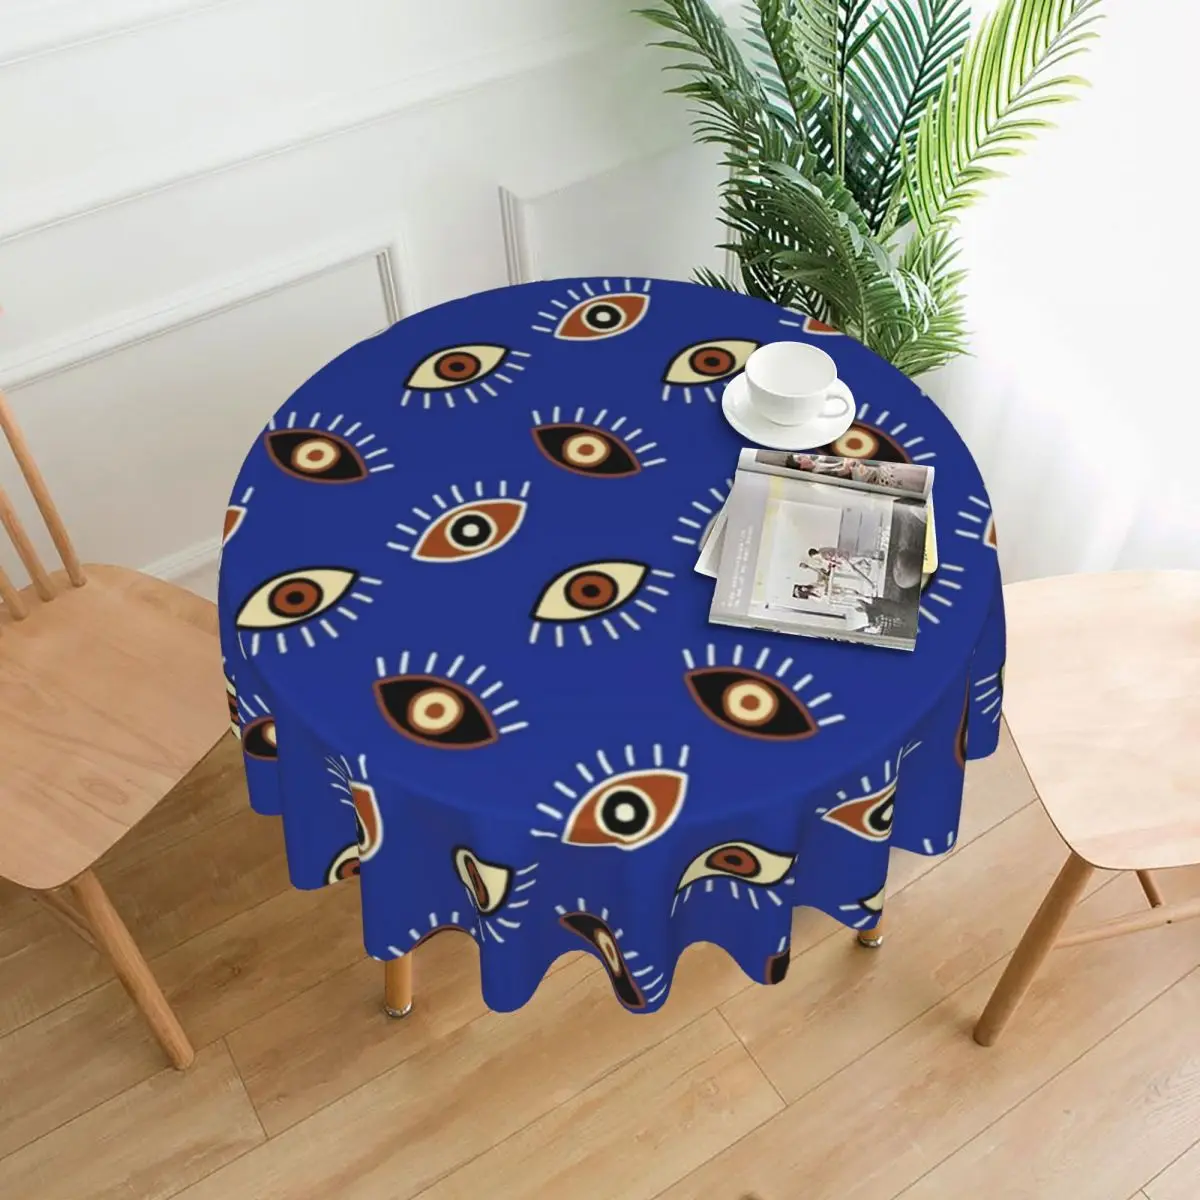 عيون الشر نمط مفرش المائدة اليونانية Eys الأزرق بوفيه البوليستر غطاء الطاولة الزخرفية بالجملة حامي مفرش طاولة مطبوع